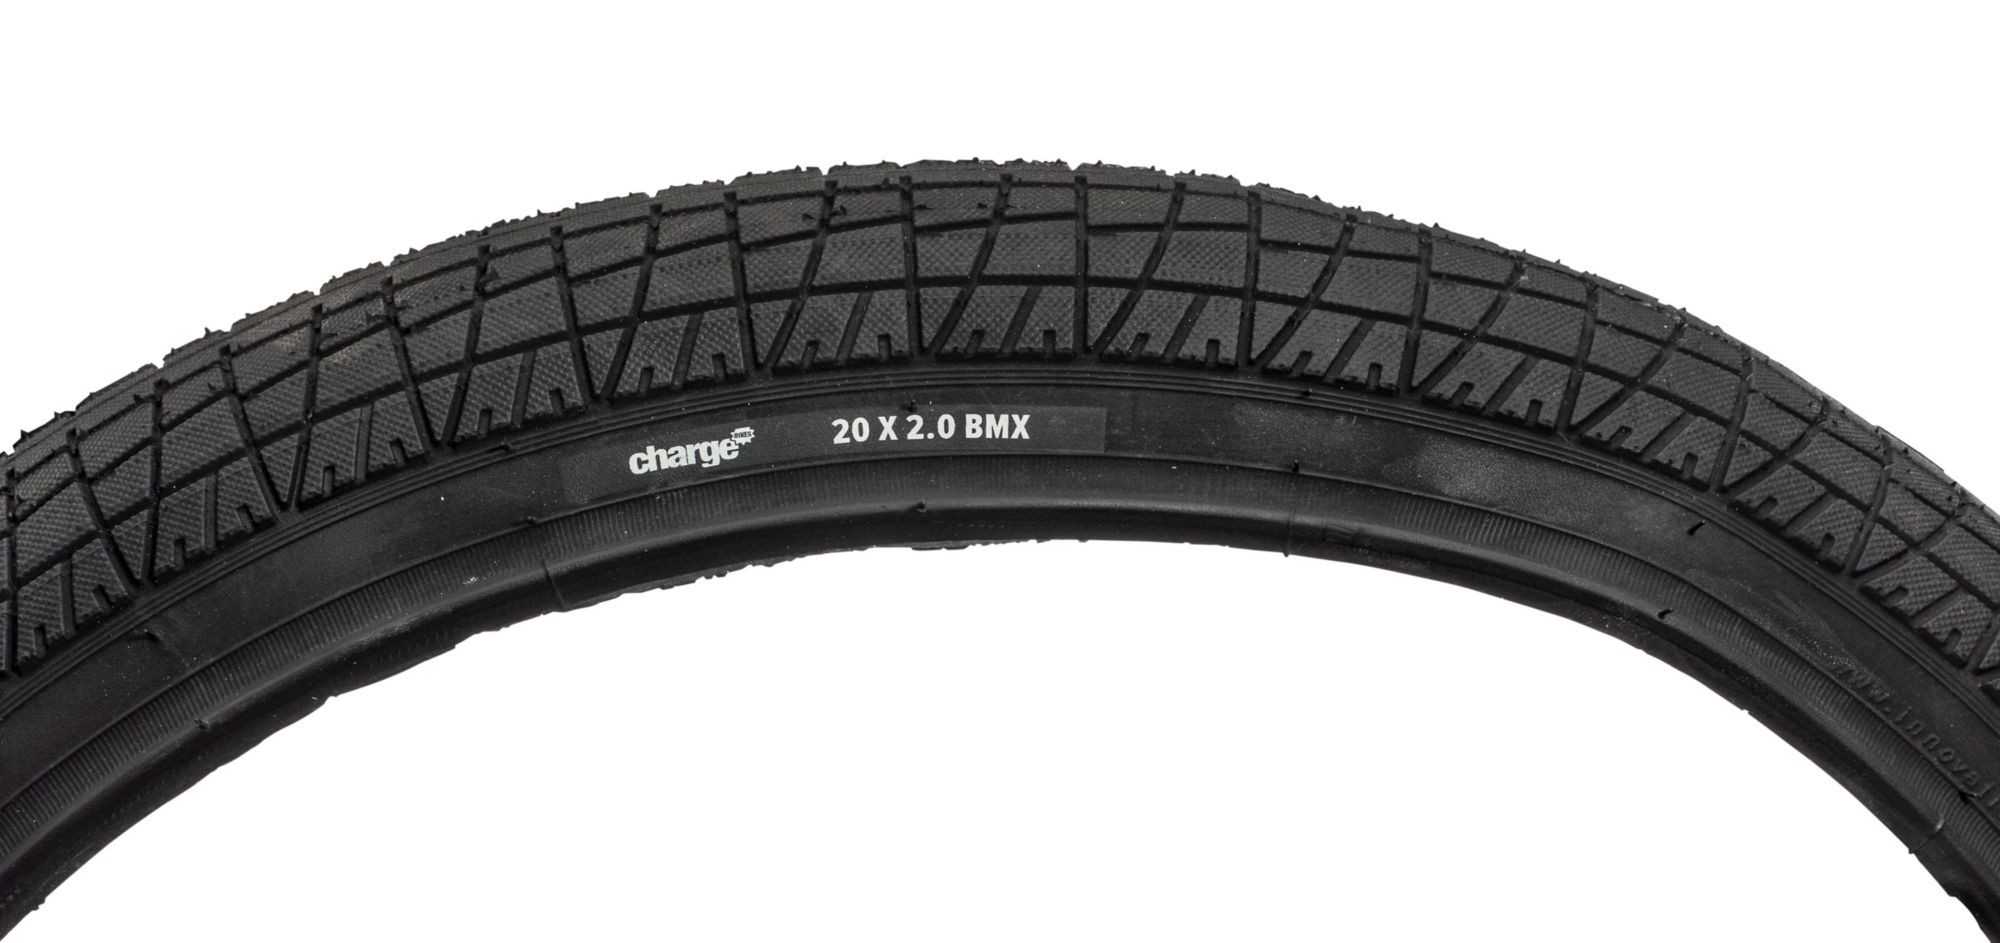 20 x 2.0 bmx tires